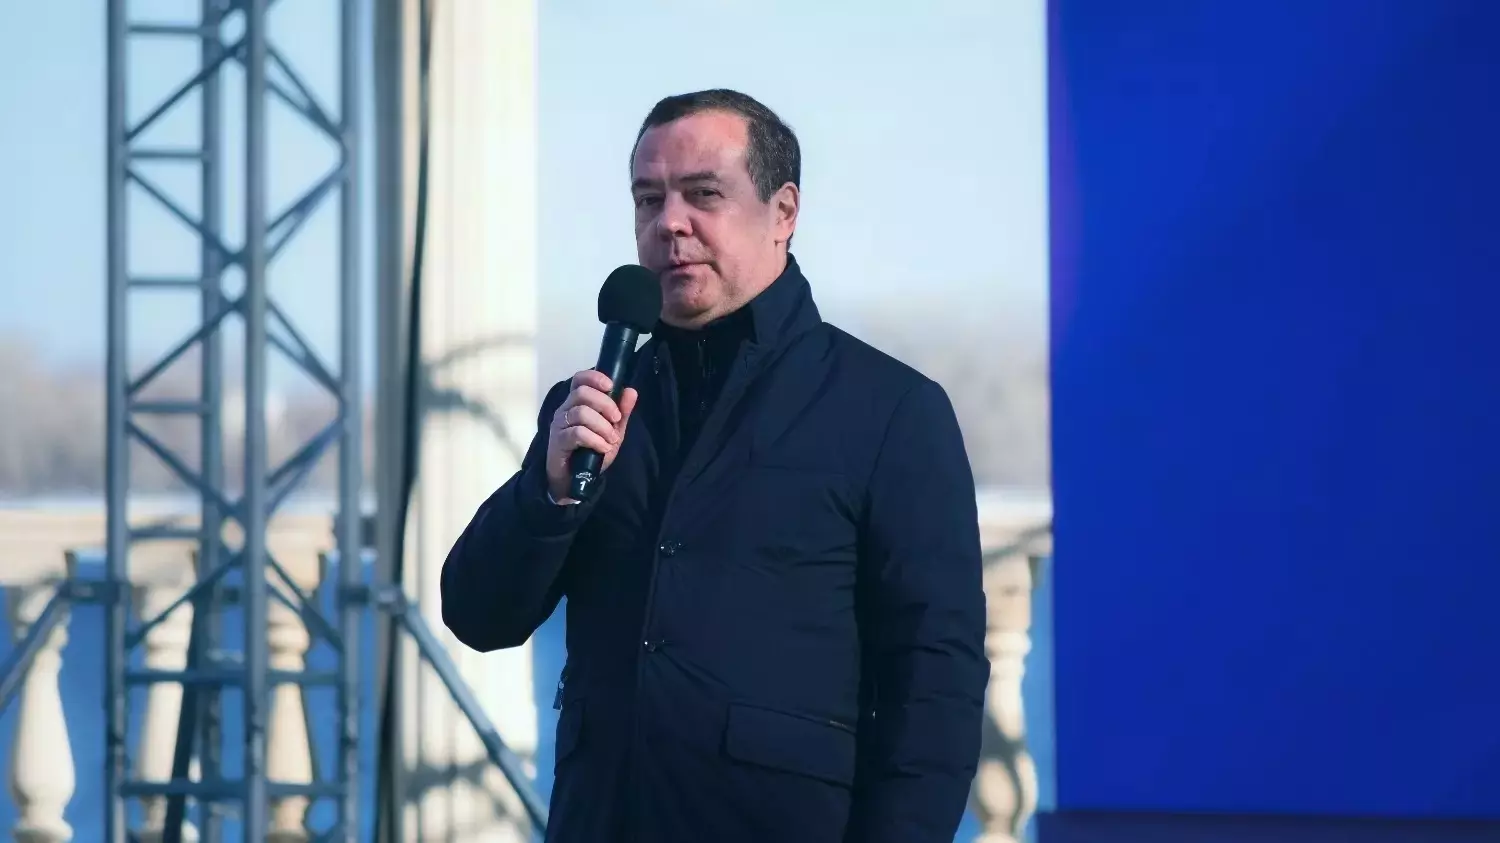 Дмитрий Медведев выступил на сцене амфитеатра